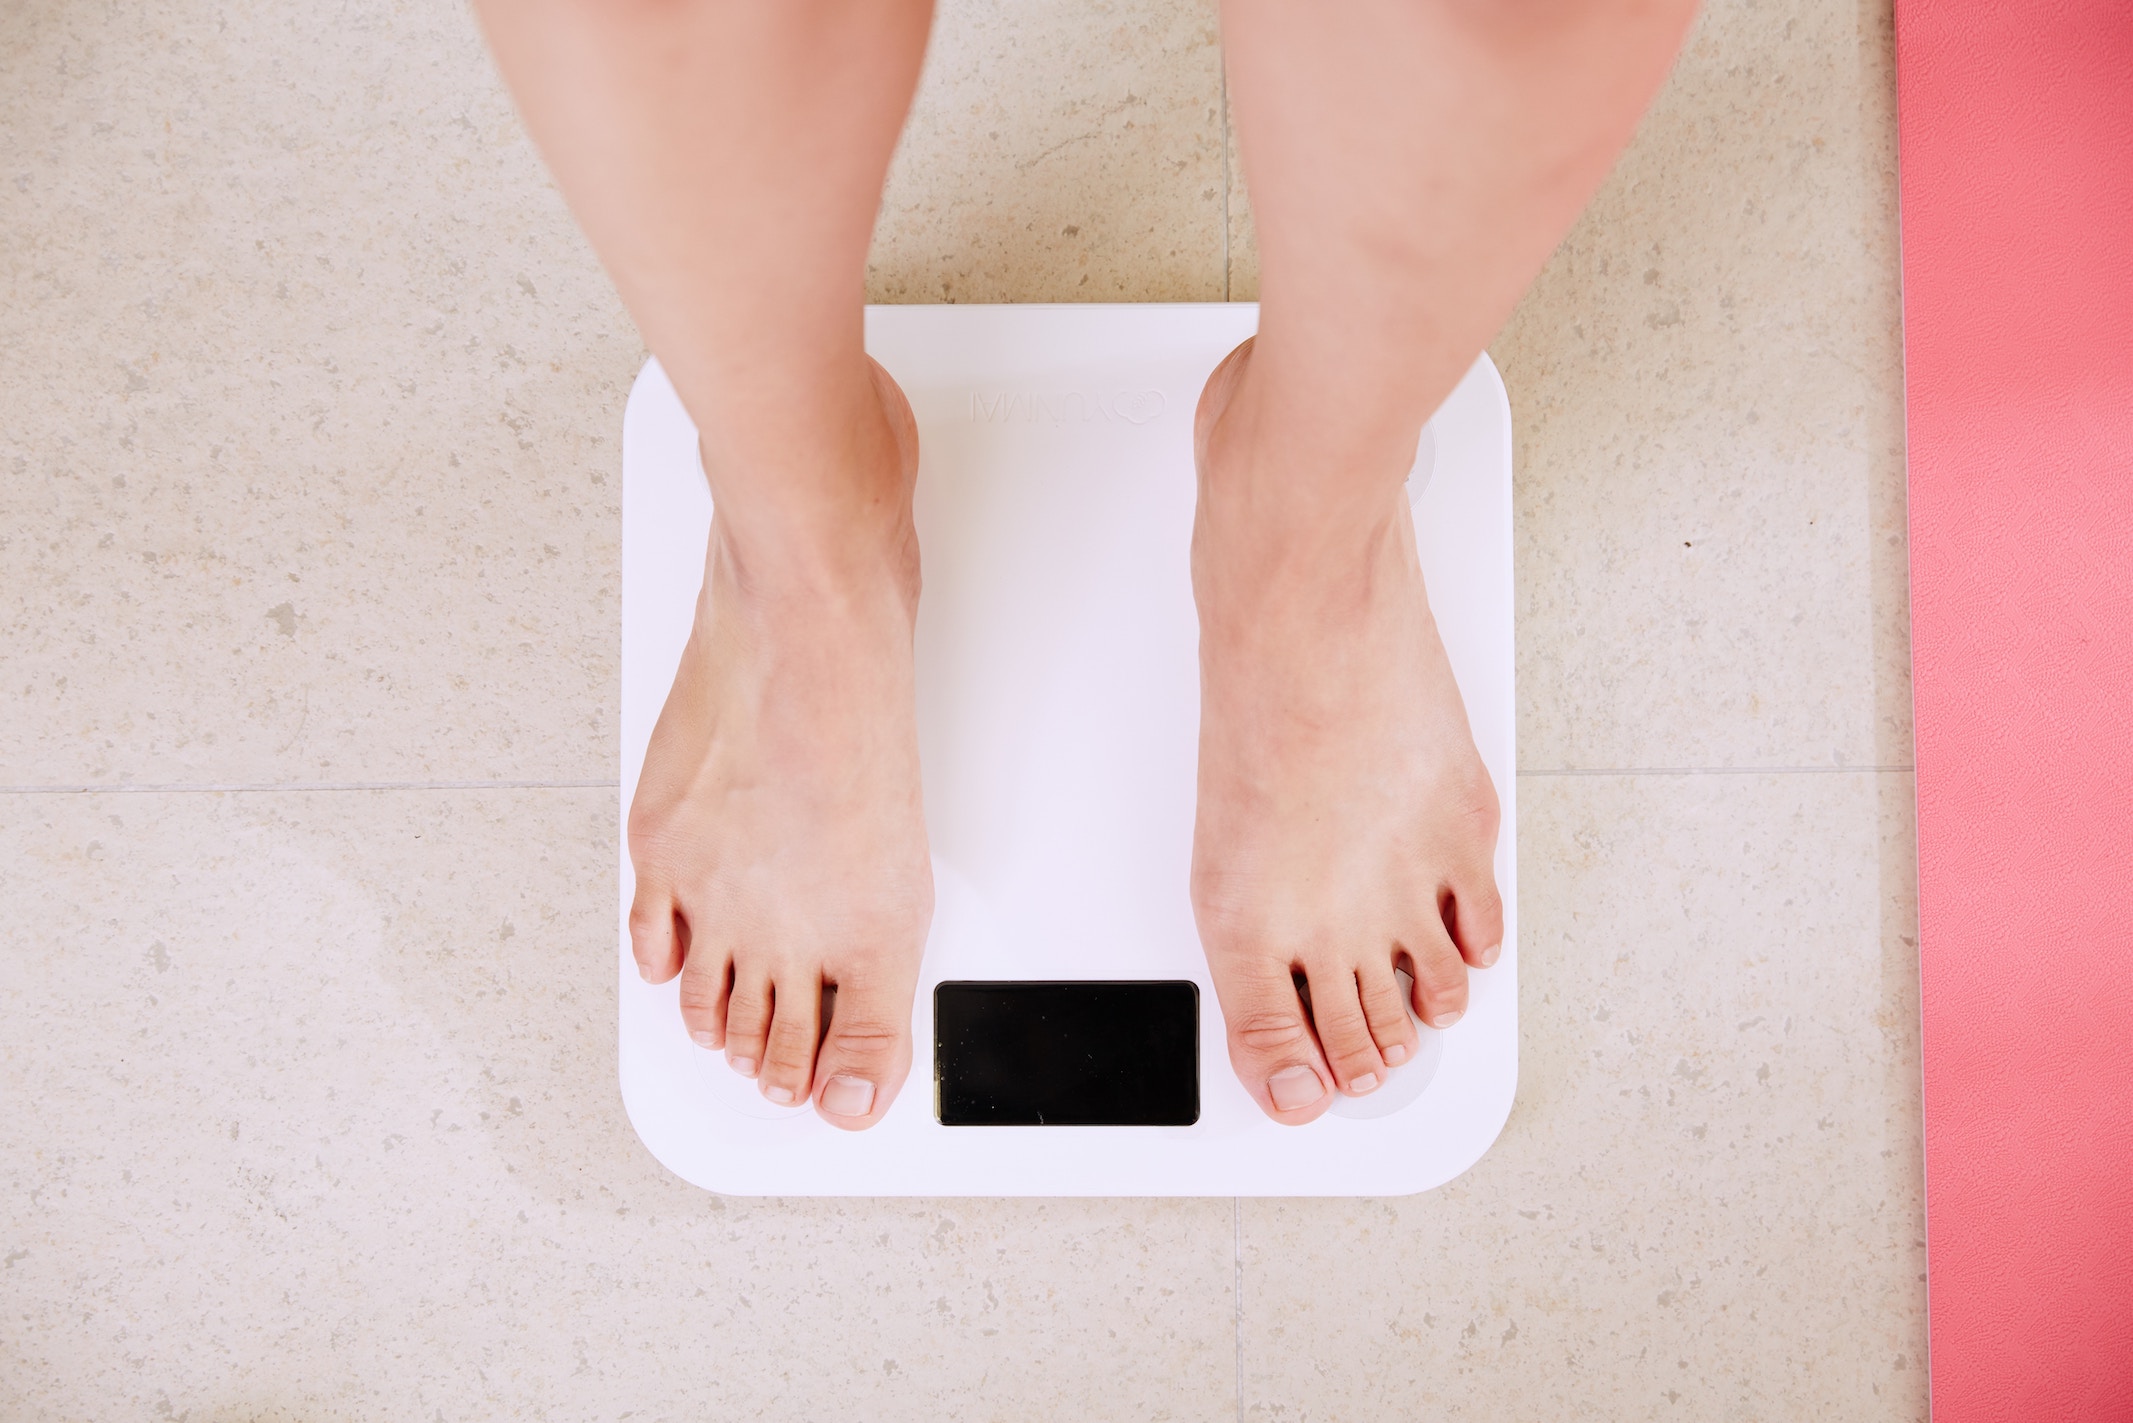 5ヶ月で5キロの減量を達成 ダイエットに成功するための6つの習慣 ナマコログ